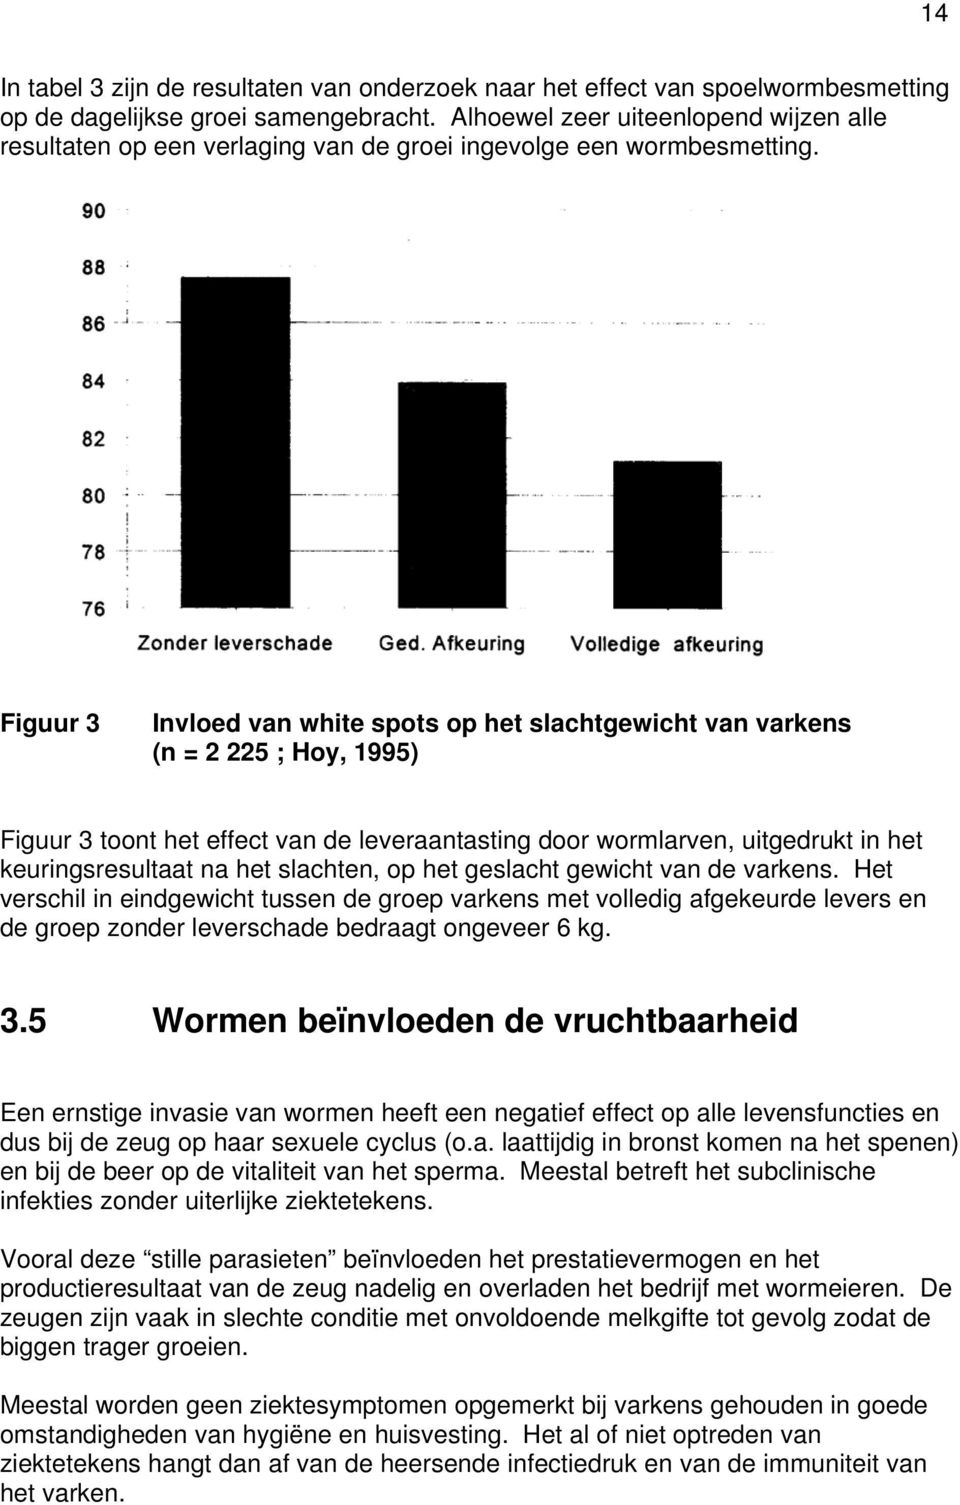 Figuur 3 Invloed van white spots op het slachtgewicht van varkens (n = 2 225 ; Hoy, 1995) Figuur 3 toont het effect van de leveraantasting door wormlarven, uitgedrukt in het keuringsresultaat na het